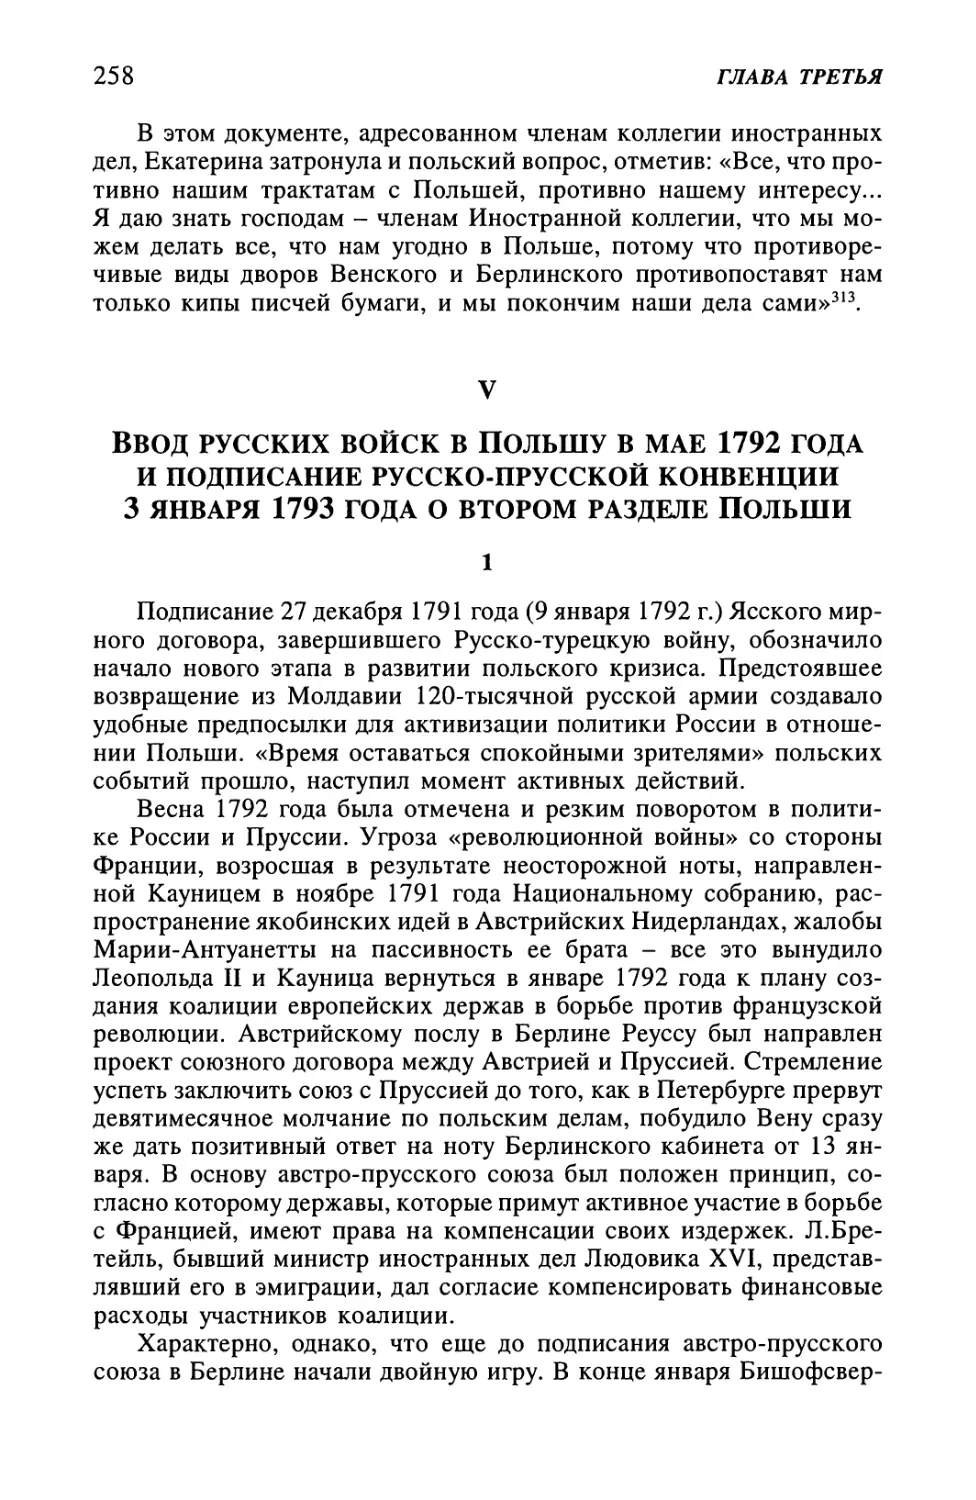 V. Ввод русских войск в Польшу в мае 1792 года и подписание русско-прусской конвенции 3 января 1793 года о втором разделе Польши